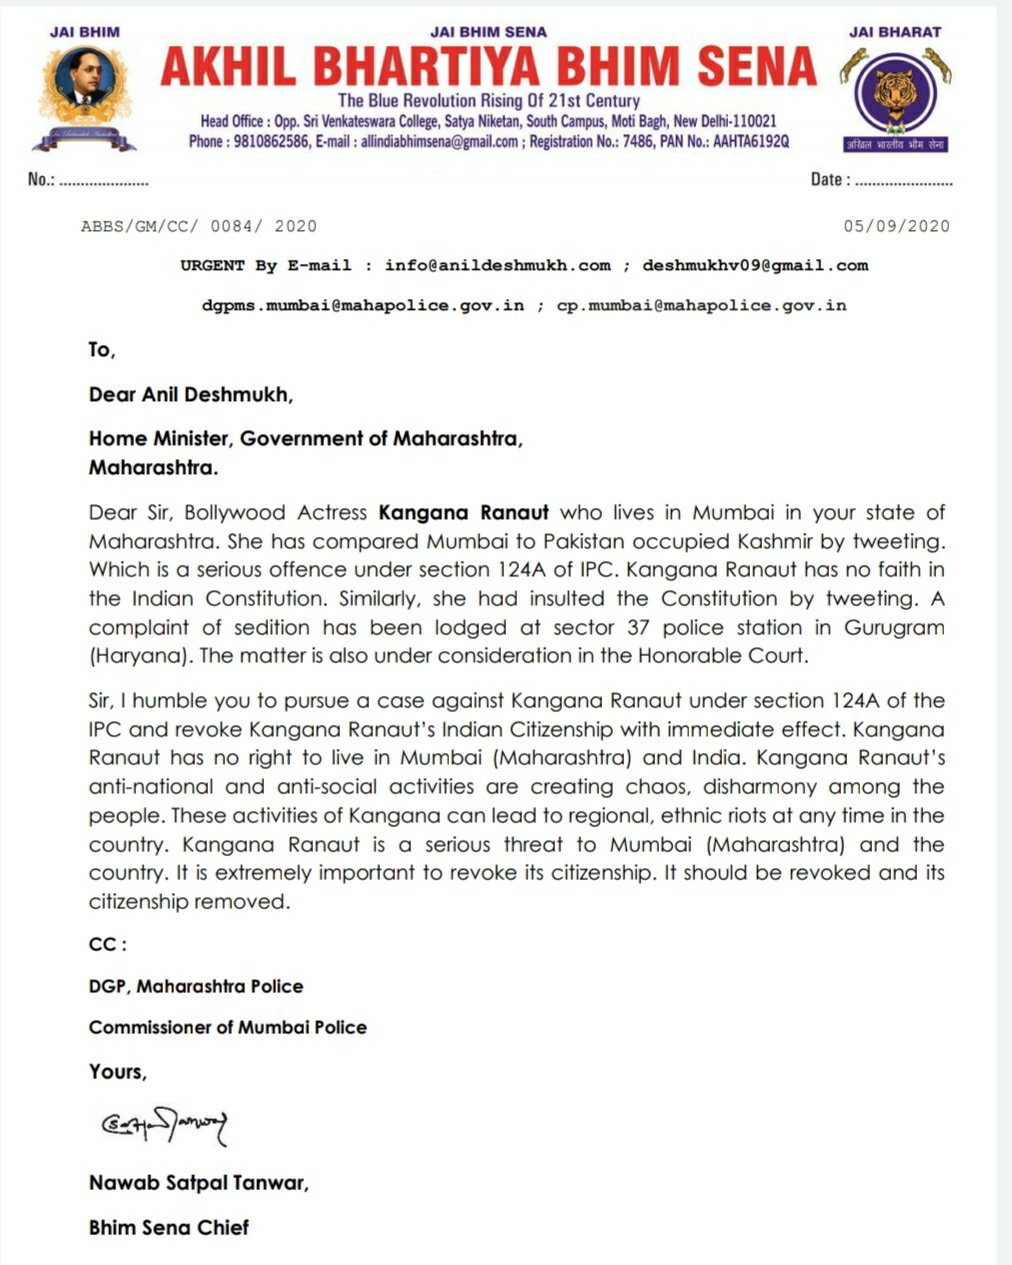 कंगना रनौत के खिलाफ देशद्रोह का केस चलाने, देश निकाला देने और नागरिकता रद्द करने की मांग, भीम सेना चीफ़ नवाब सतपाल तंवर ने लिखा महाराष्ट्र के गृहमंत्री को पत्र, महाराष्ट्र के डीजीपी और मुंबई पुलिस कमिश्नर को भी भेजी पत्र की कॉपी | New India Times